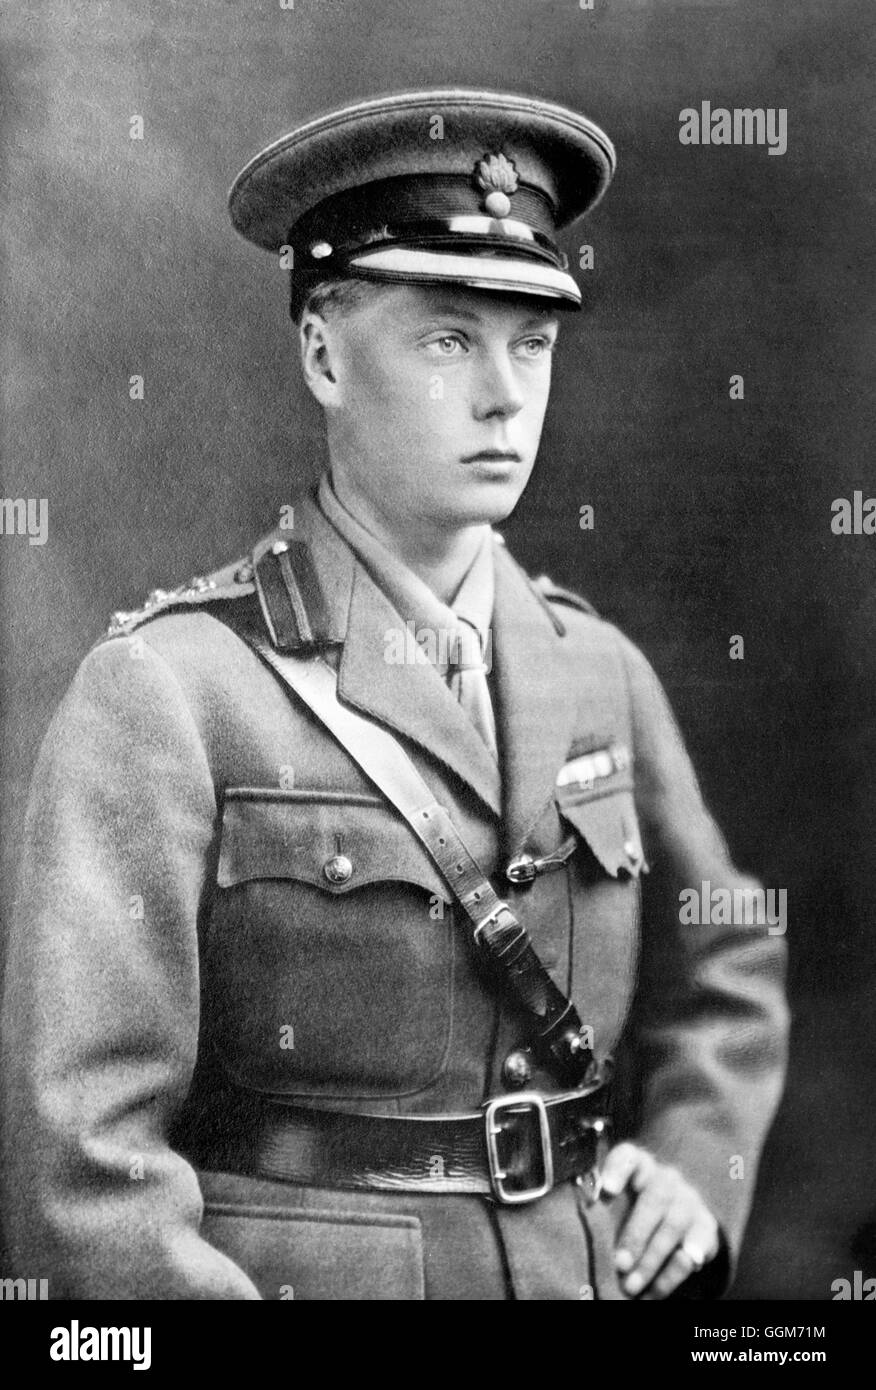 Édouard VIII. Portrait du Prince de Galles, futur roi Édouard VIII et duc de Windsor (1894-1972), en uniforme. Photo de Bains News Service, c.1915-1920. Banque D'Images